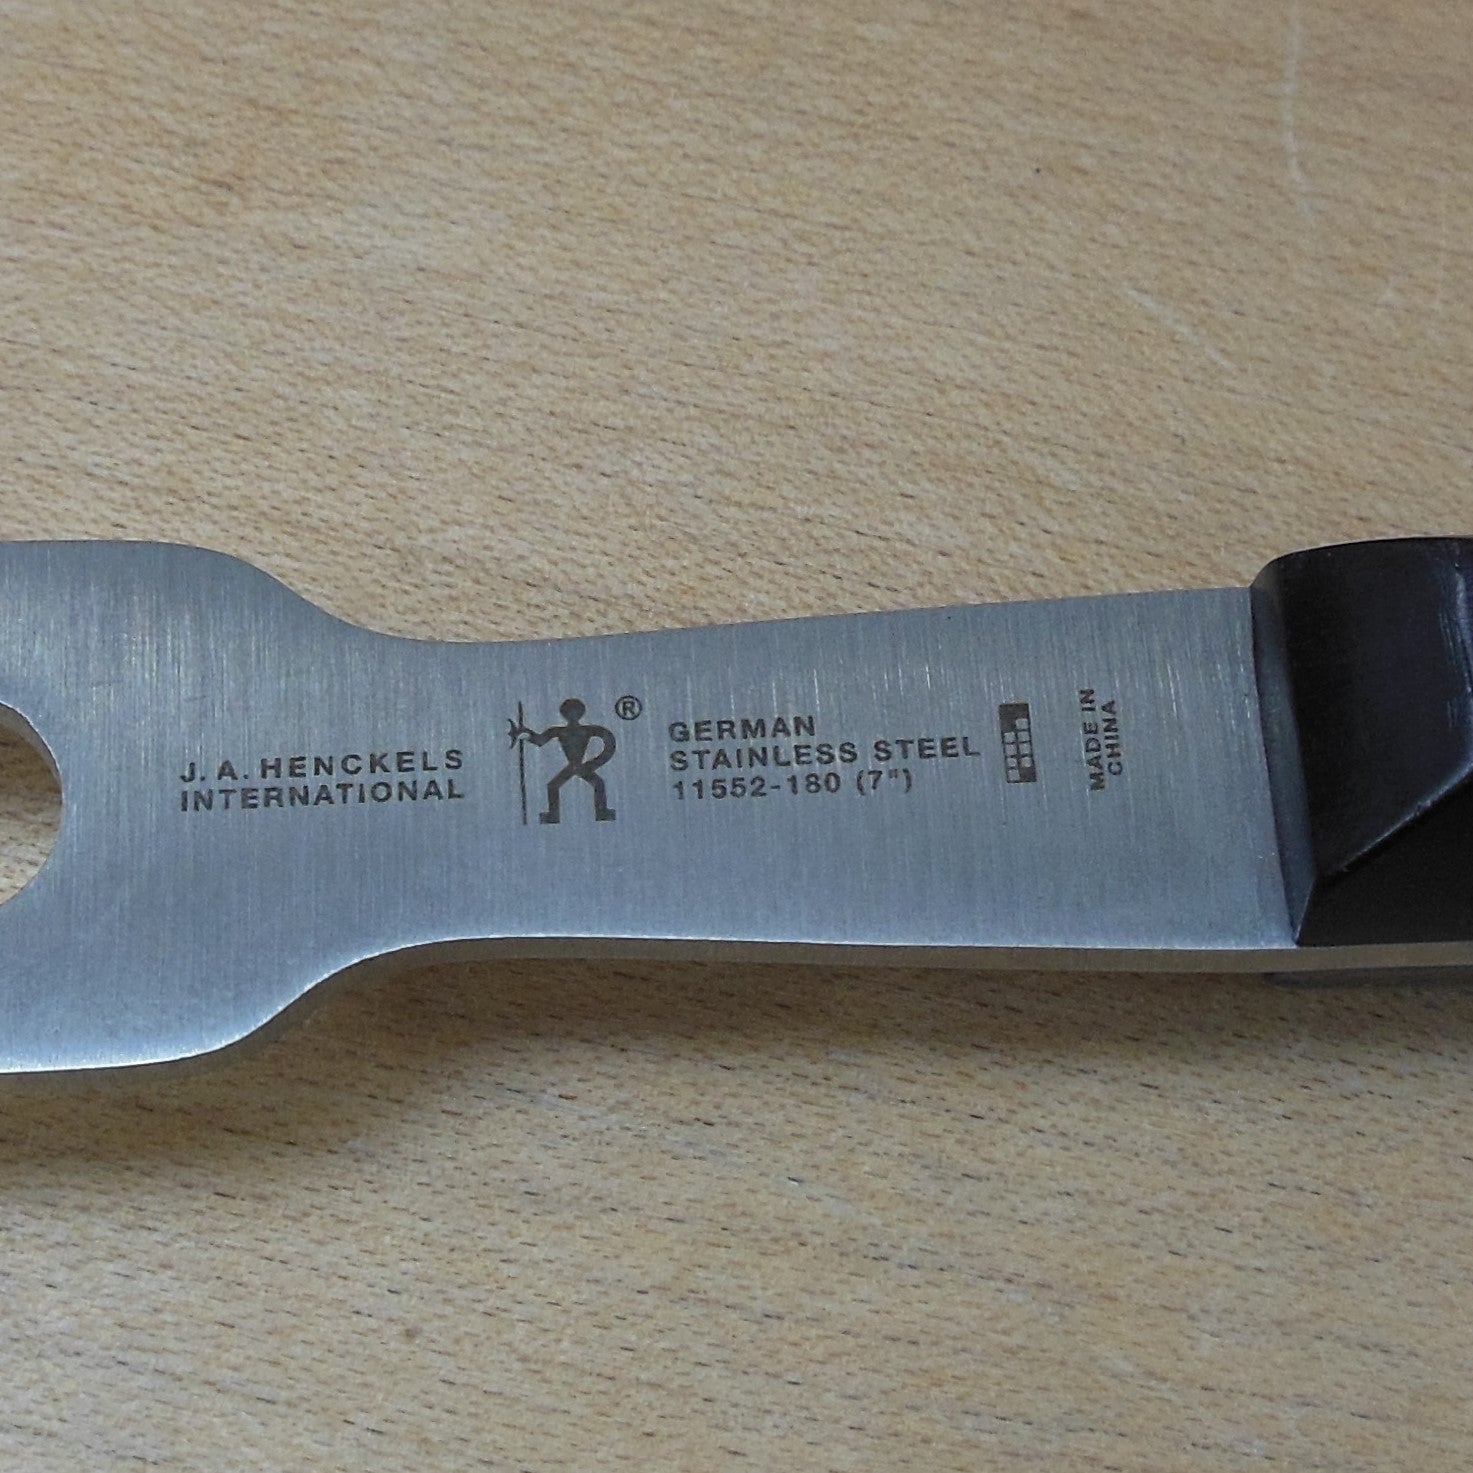 J.A. Henckels German Stainless Steel Carving Fork 11552-180 7" EUC